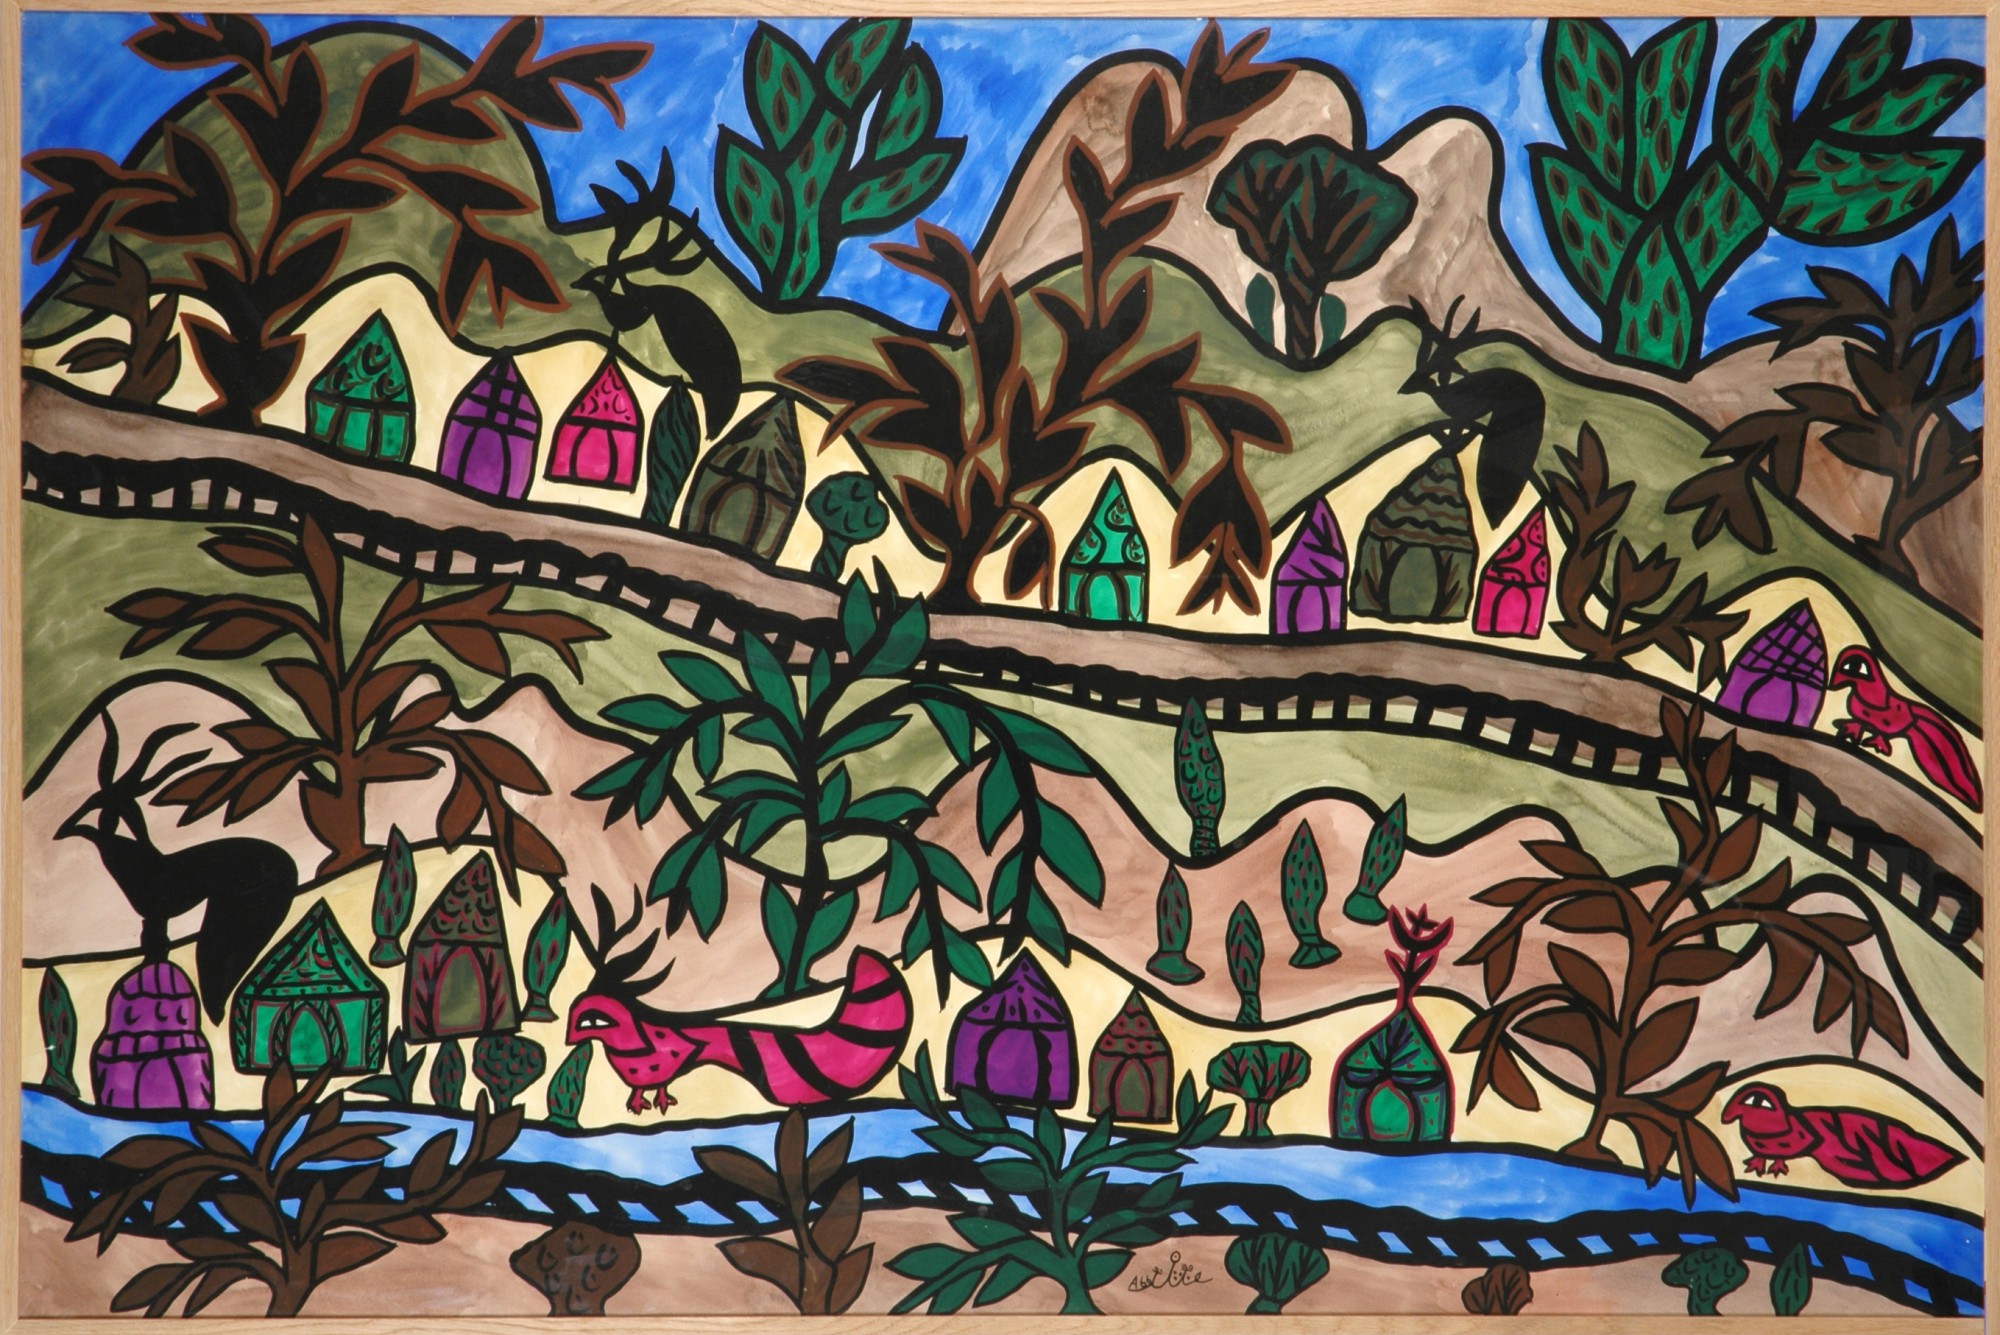 Baya, Paysage aux maisons et collines, gouache sur papier, 1966, FNAC 29677, Centre national des arts plastiques, dépôt au Musée du Quai Branly. Crédit photo : Othmane Mahieddine